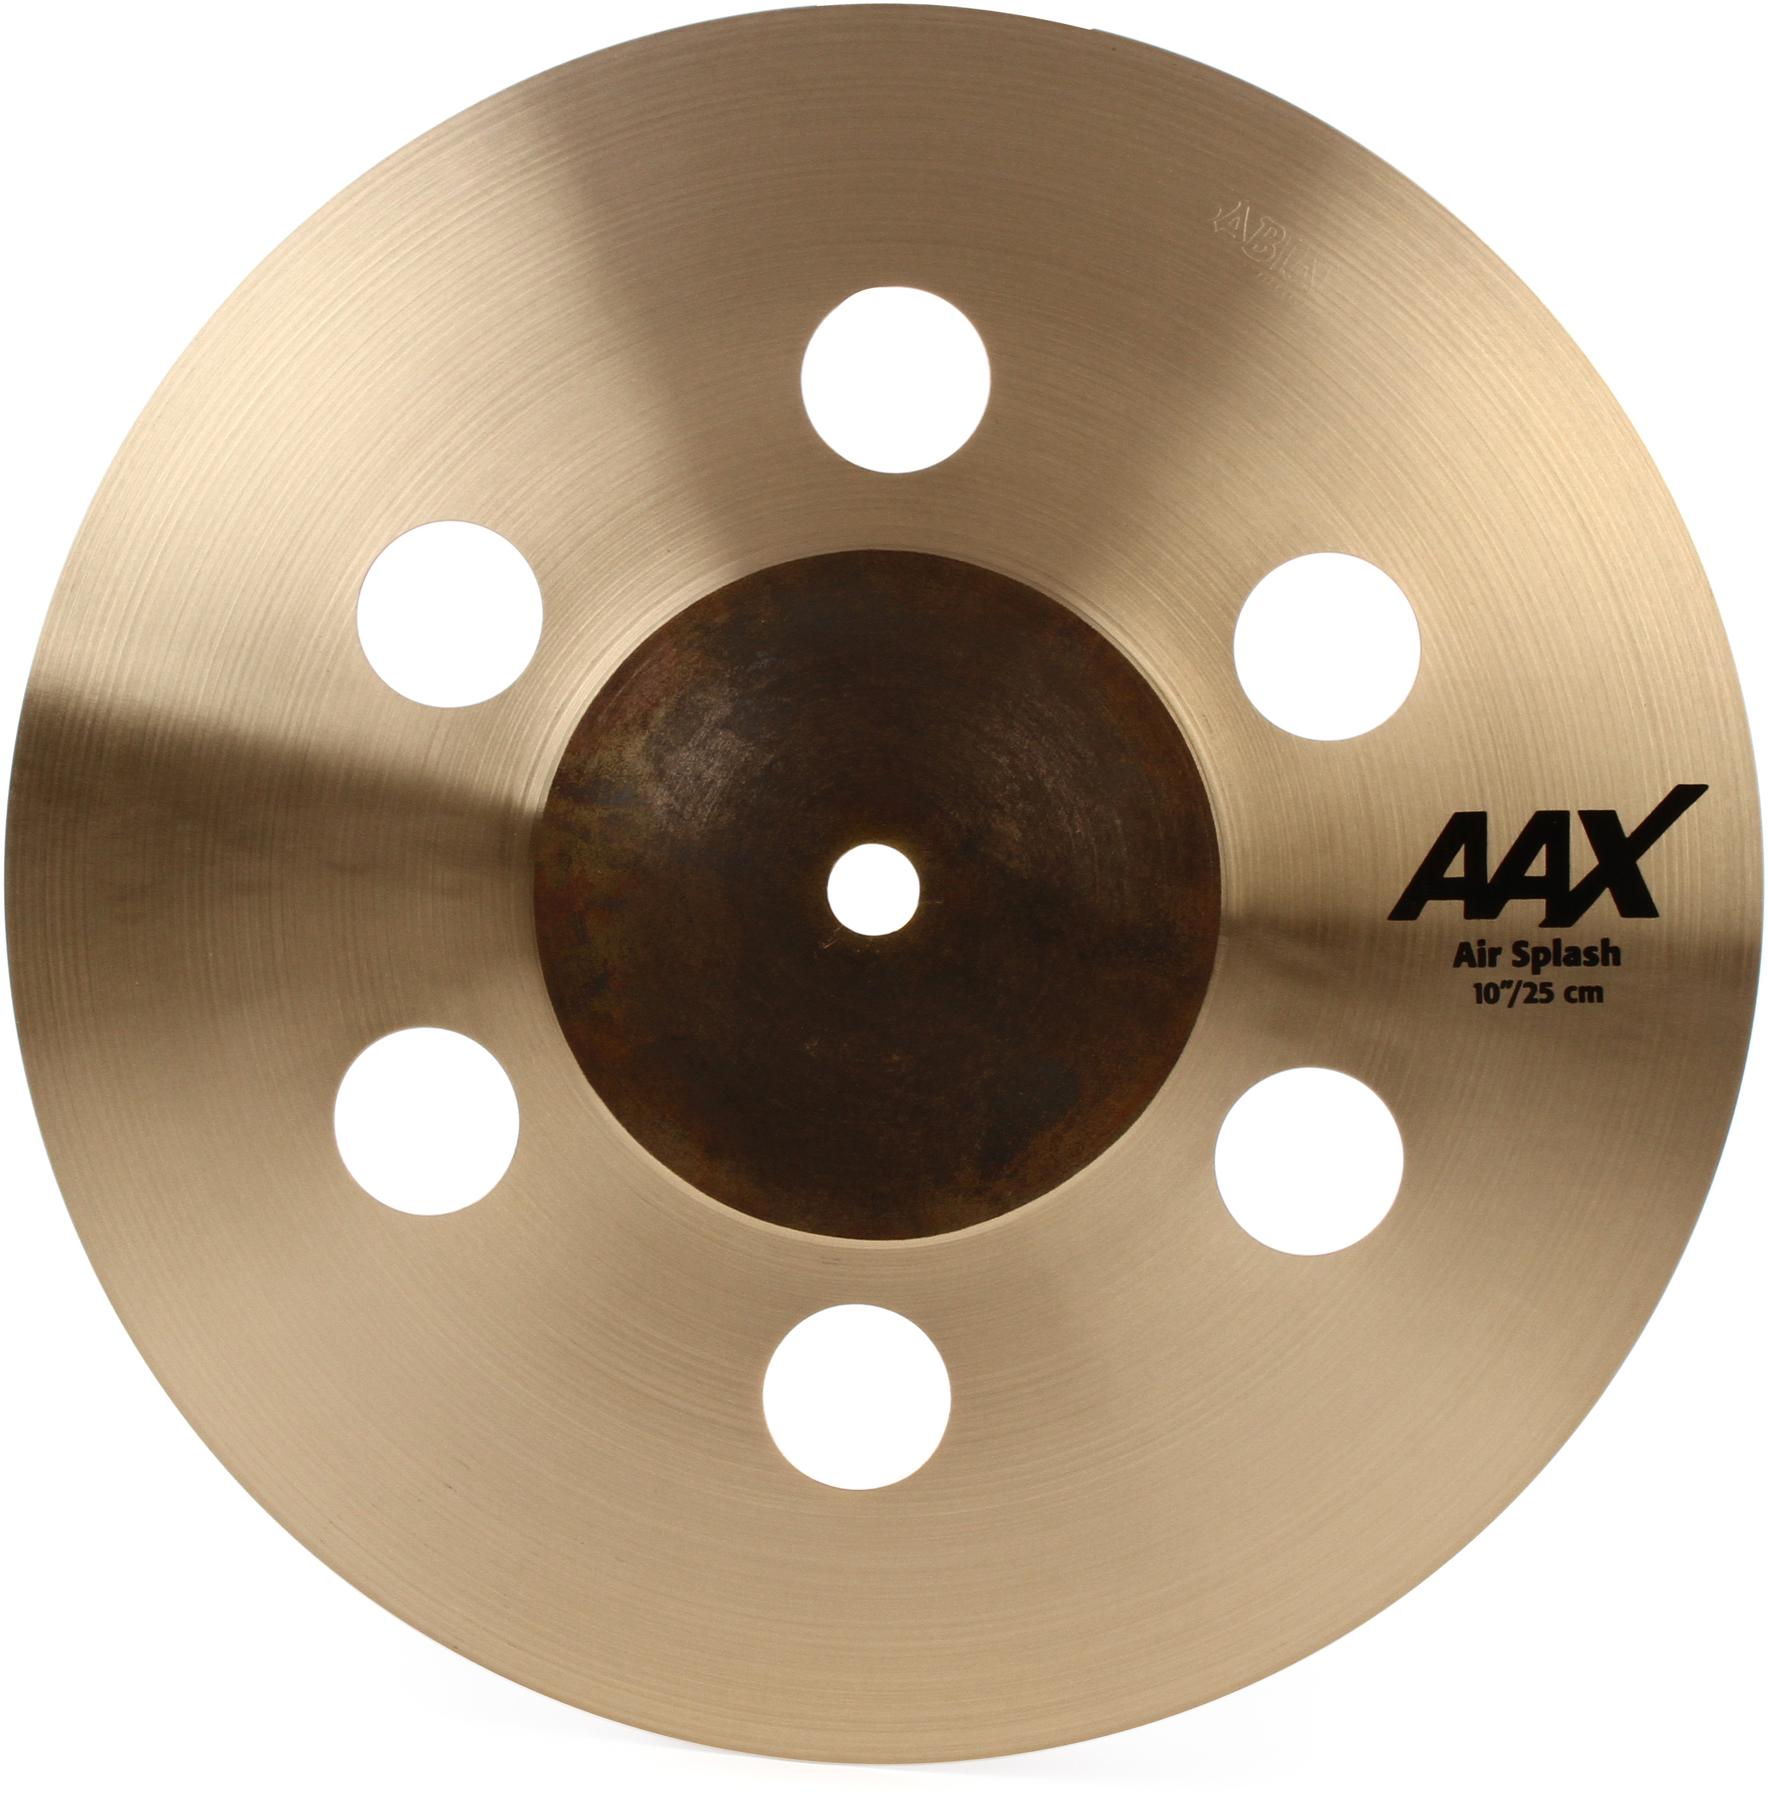 1. Sabian AAX 10” Air